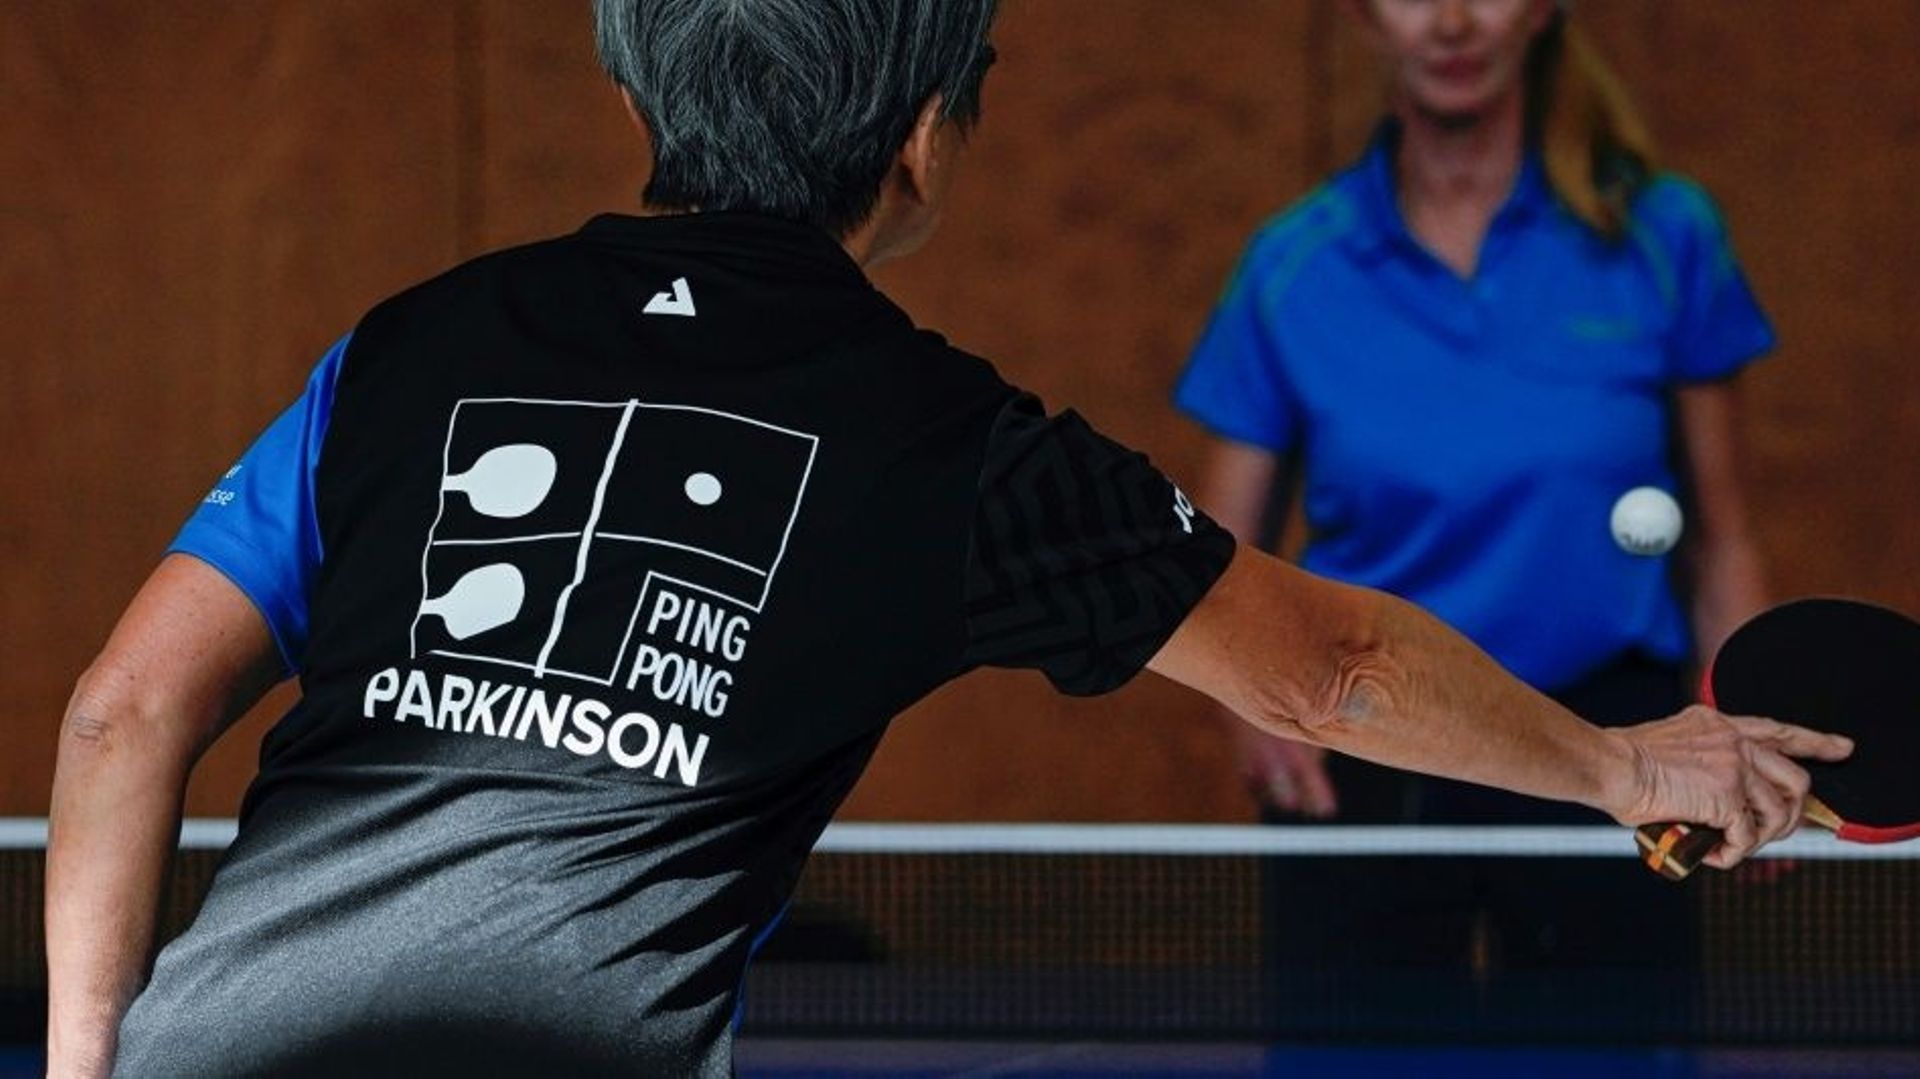 Le ping-pong, thérapie ludique contre la maladie de Parkinson.